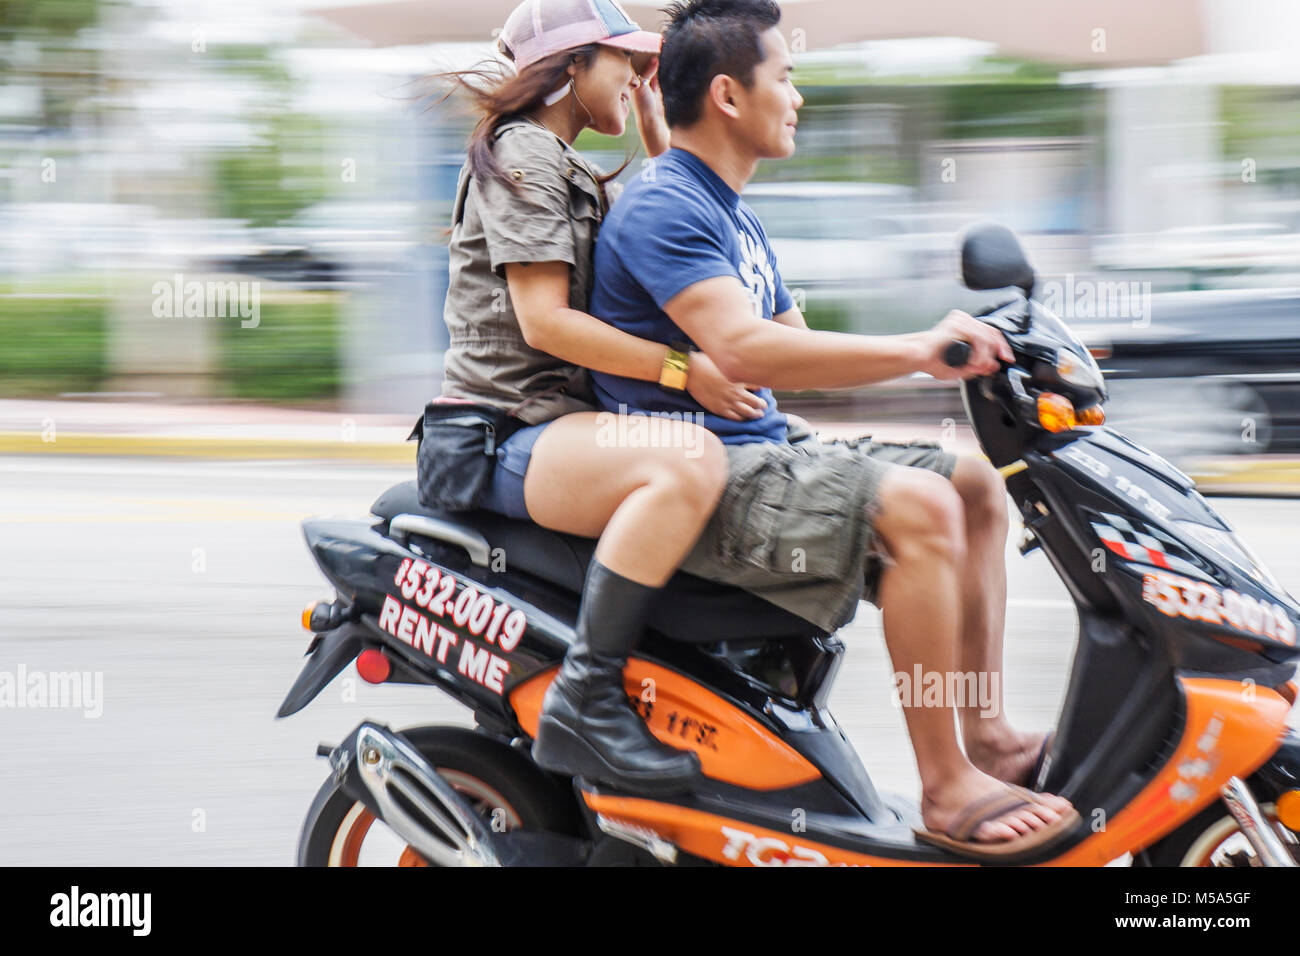 motorcycle rental miami beach